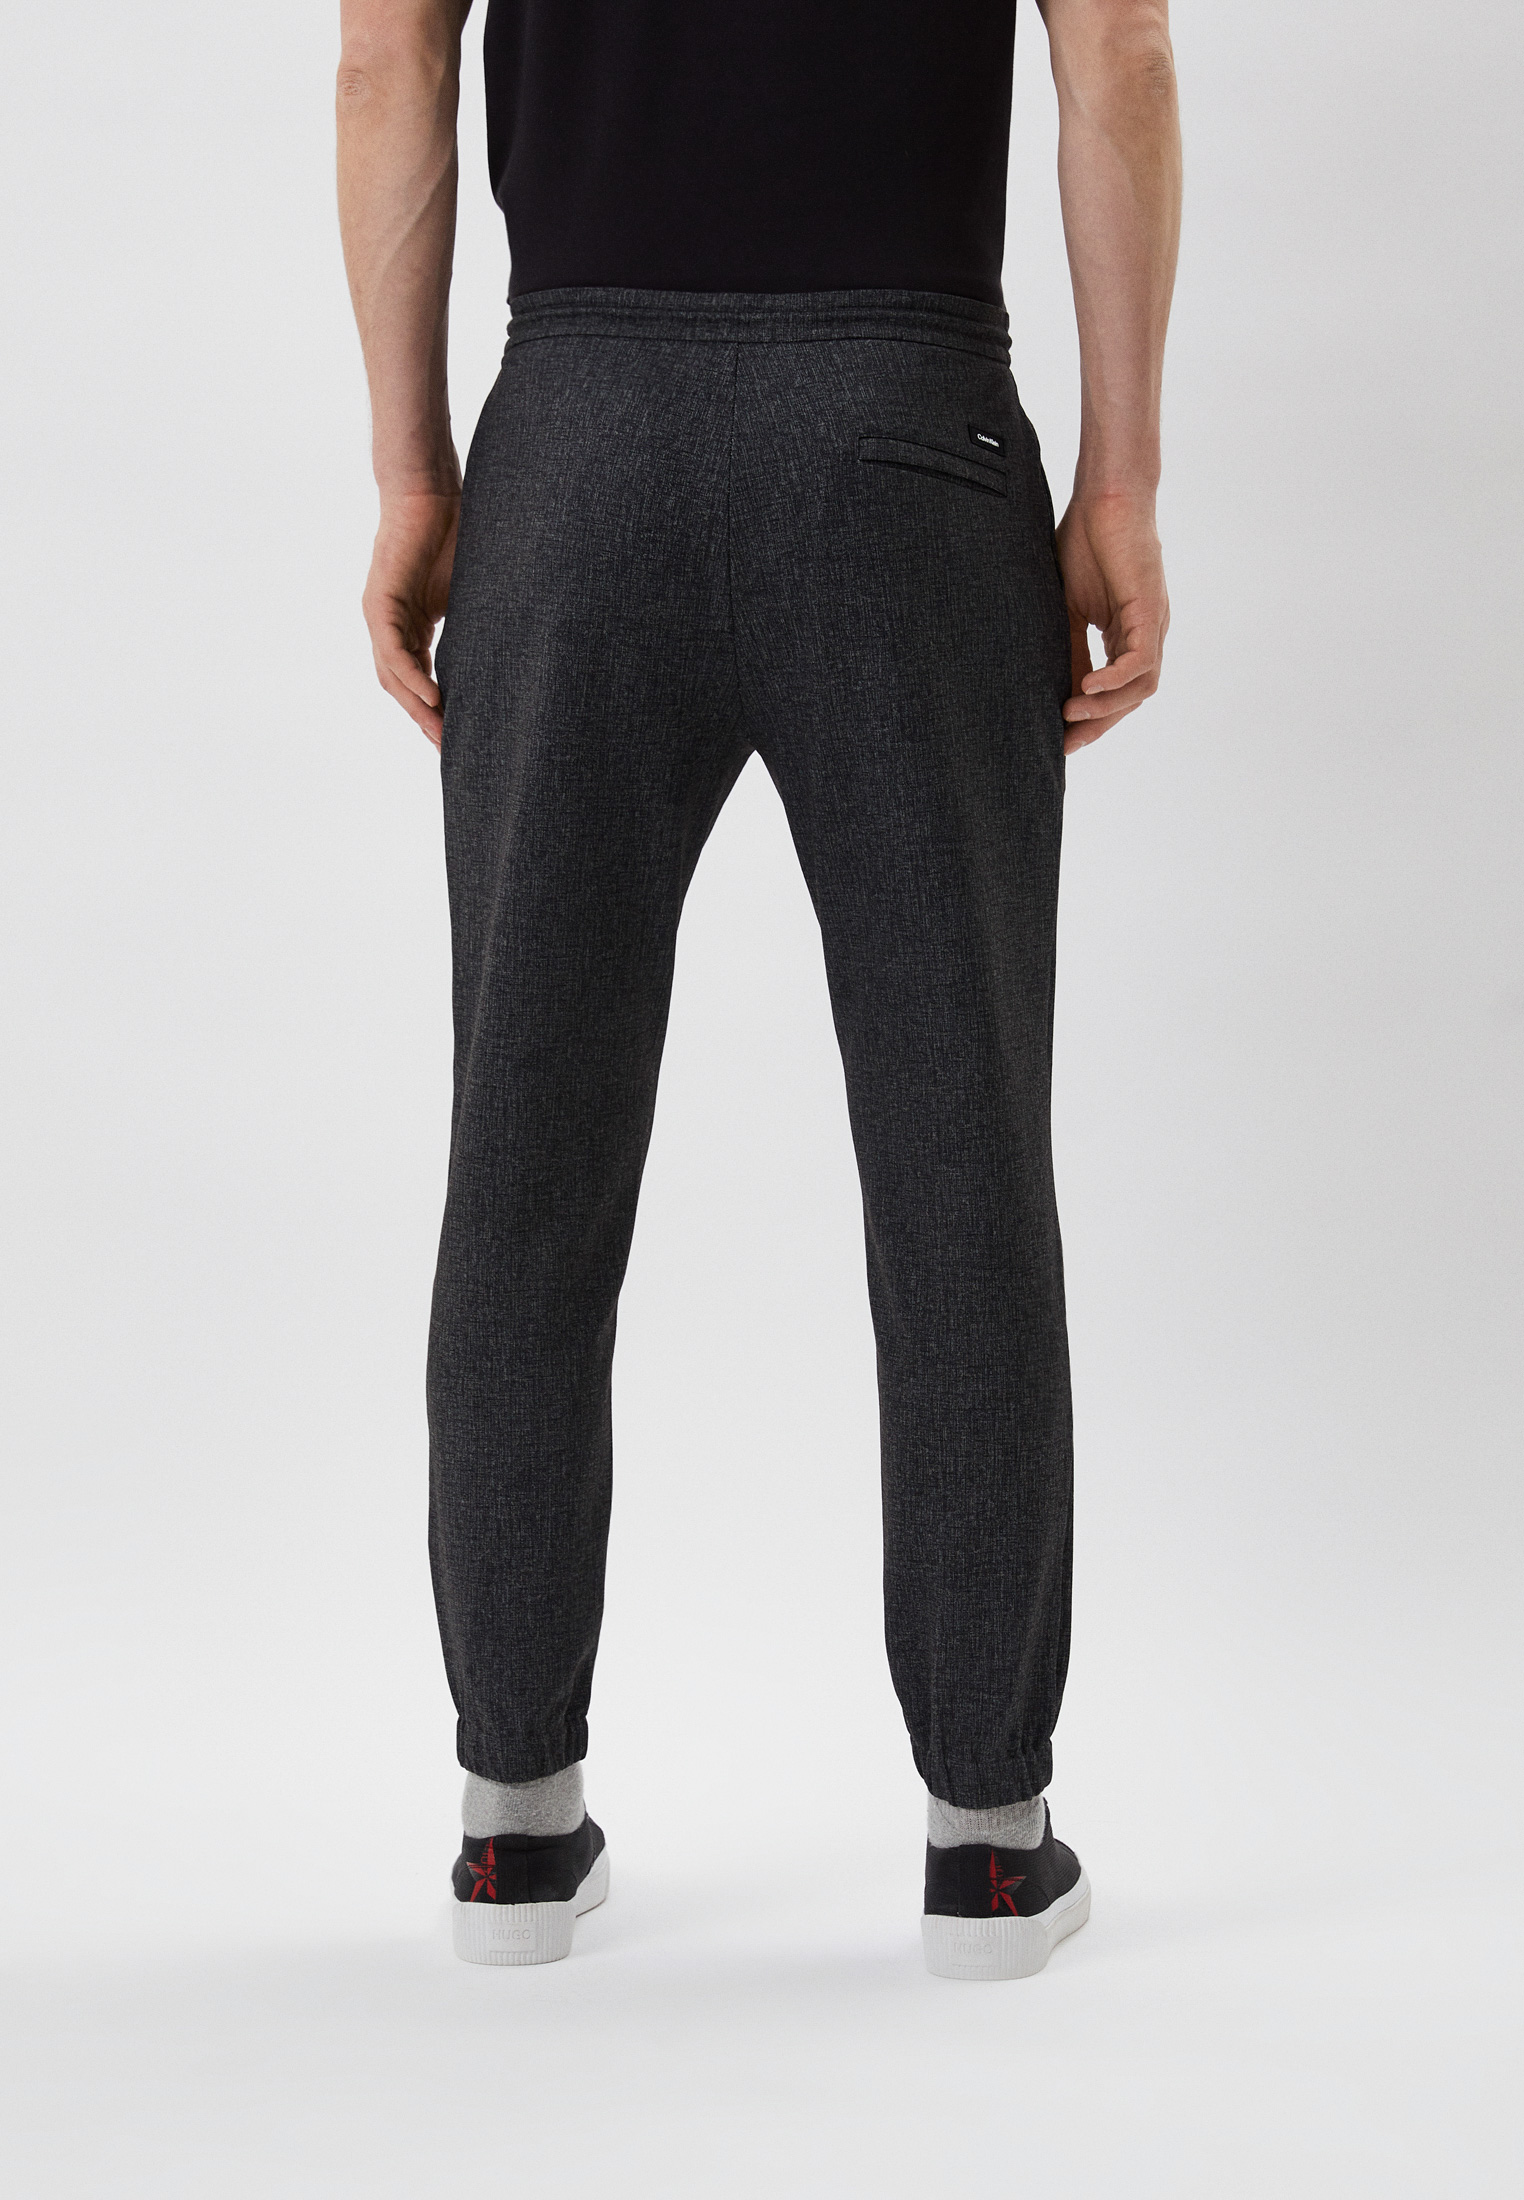 Мужские повседневные брюки Calvin Klein (Кельвин Кляйн) K10K108149: изображение 3